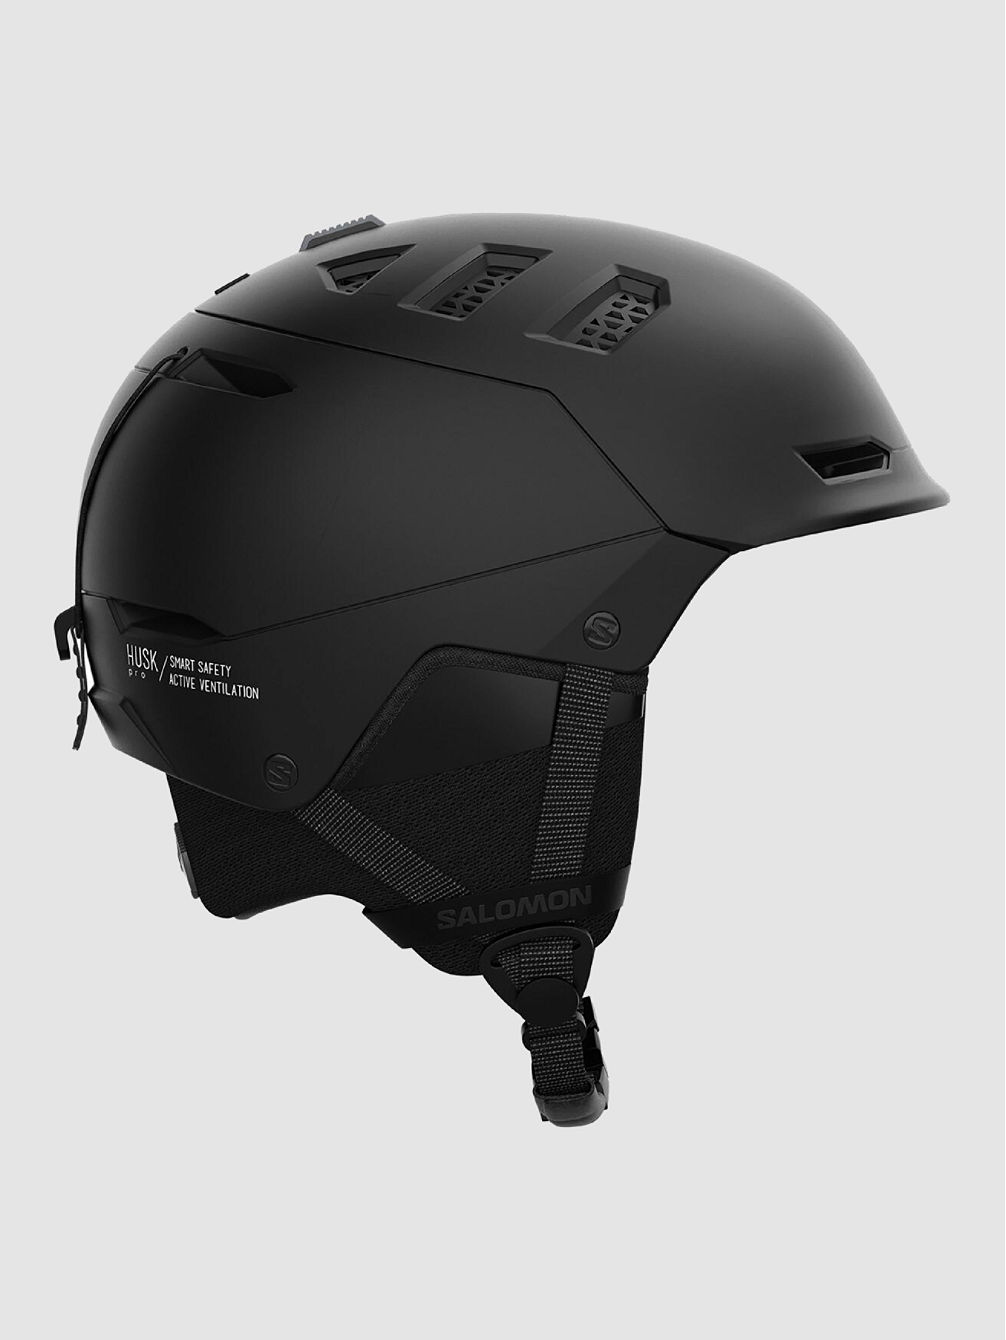 Husk Pro MIPS Helmet